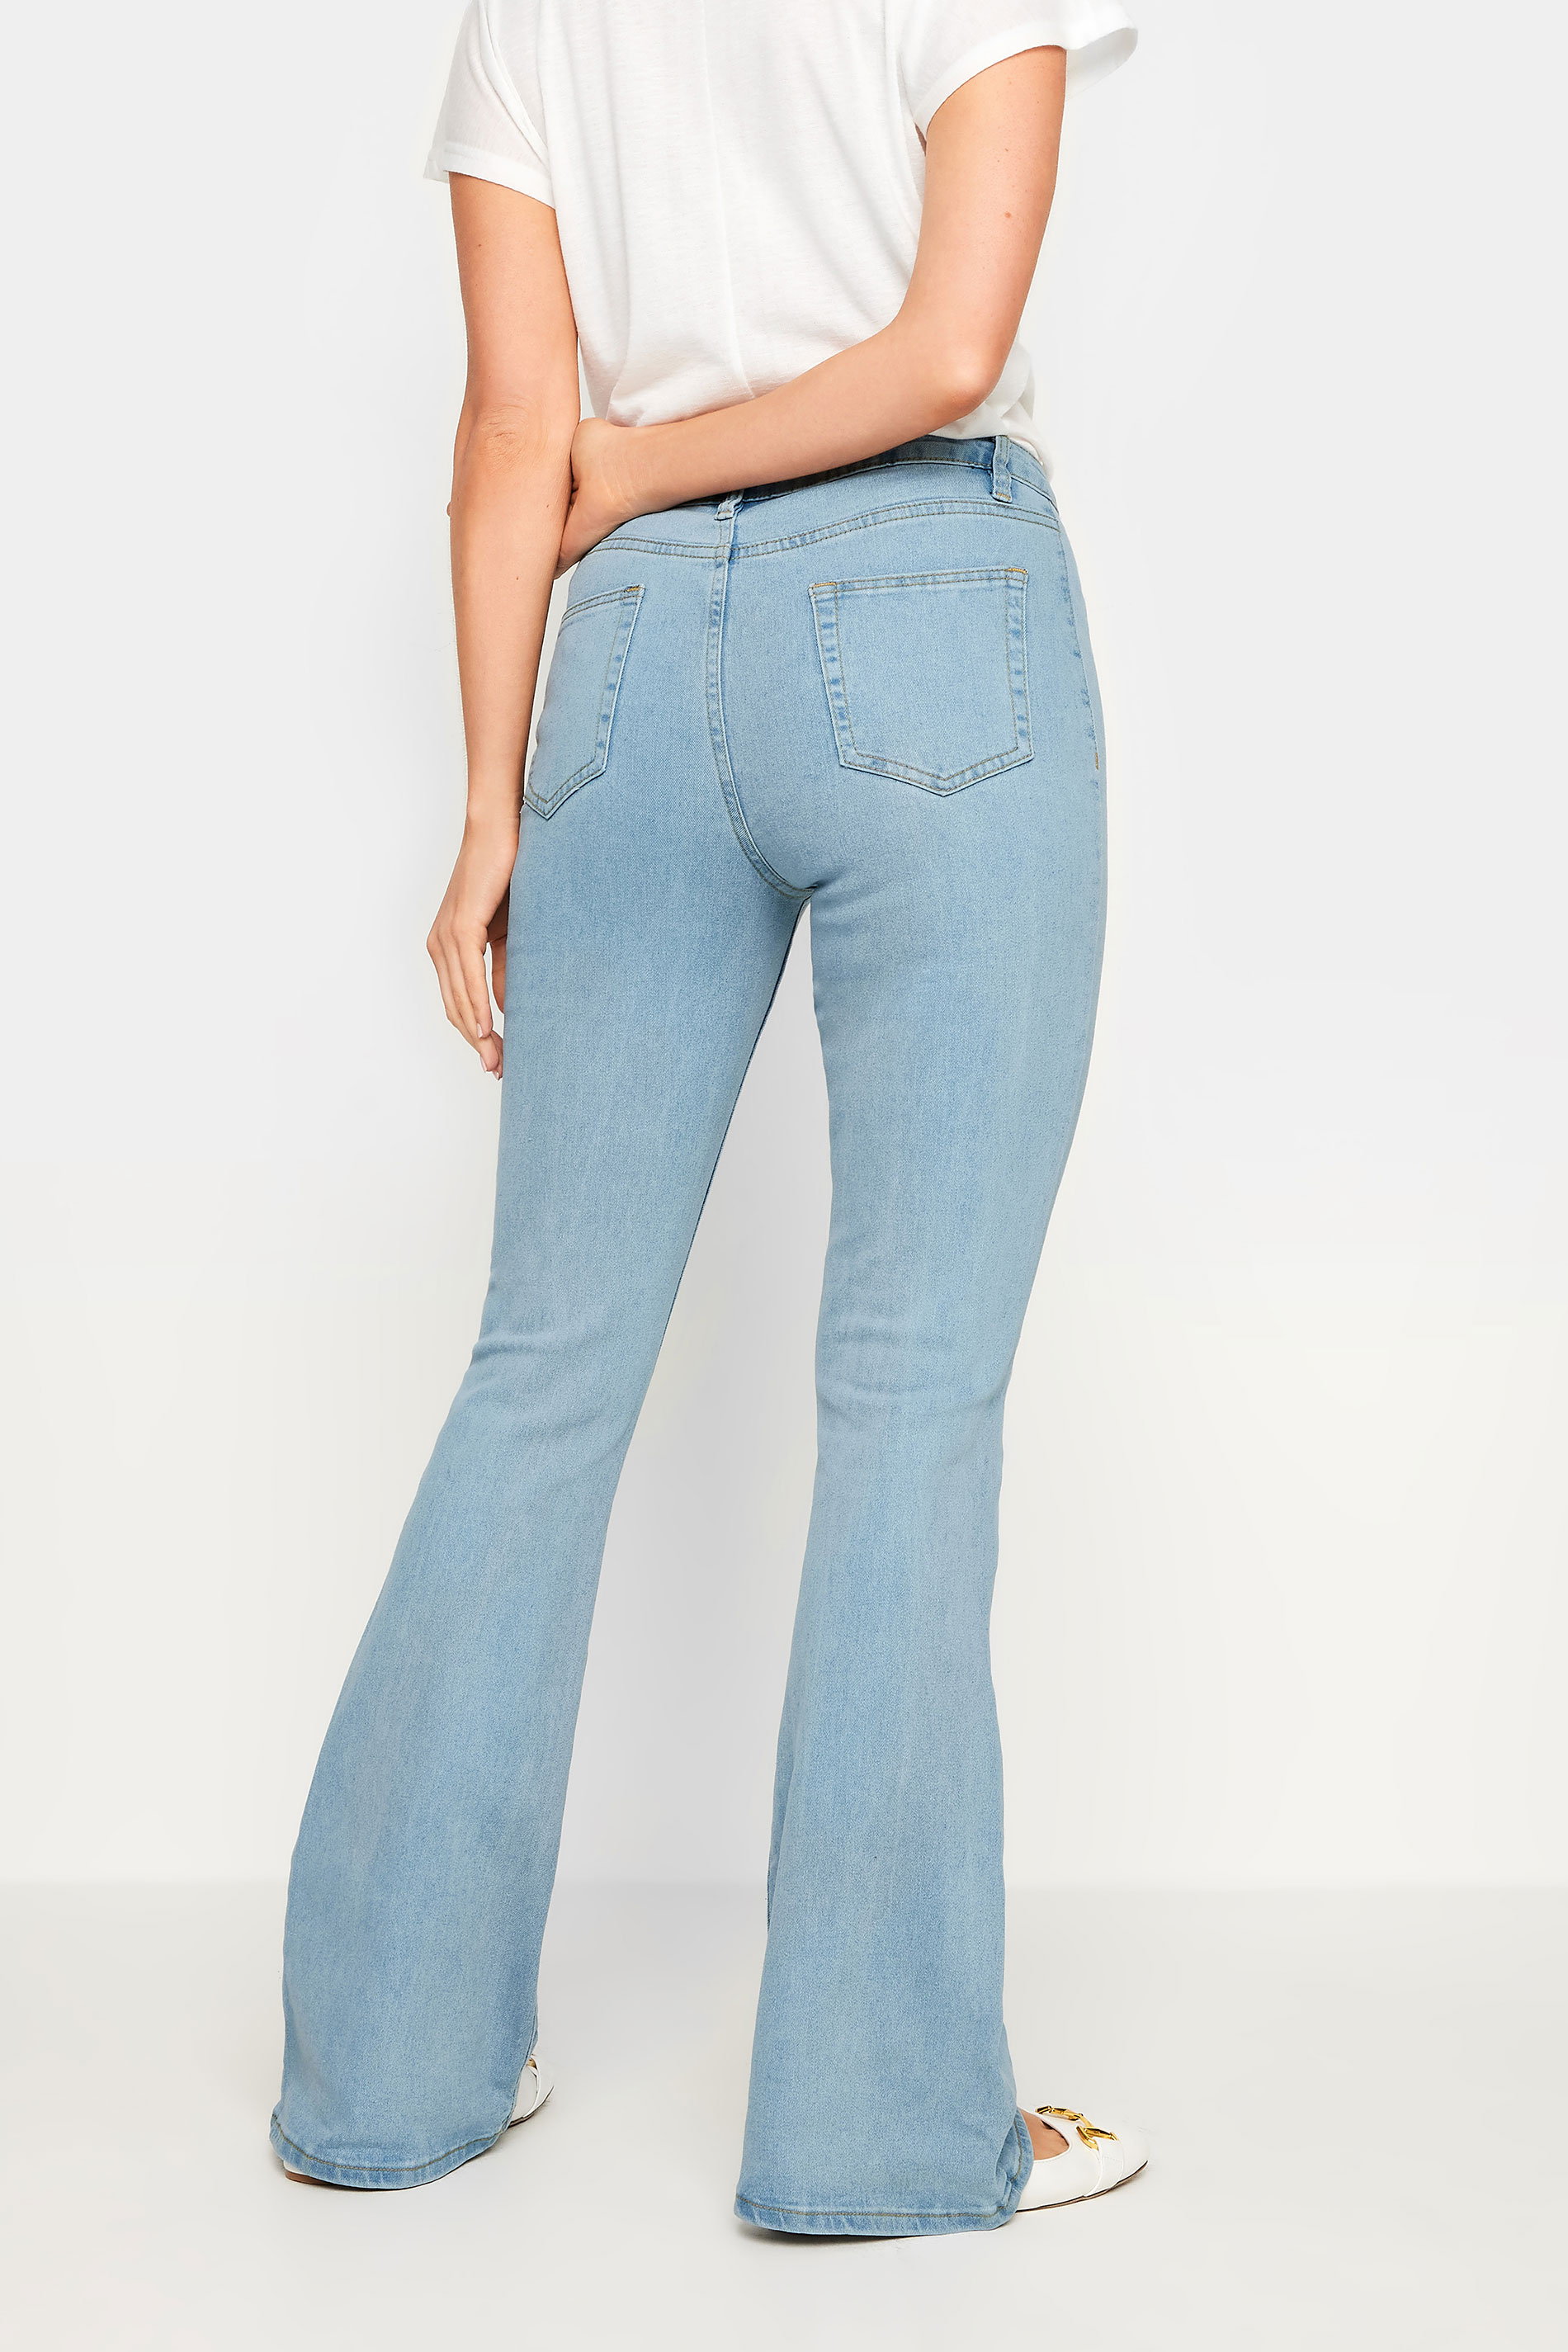 LTS Tall Women's Light Blue Denim Flared Jeans | Long Tall Sally 3